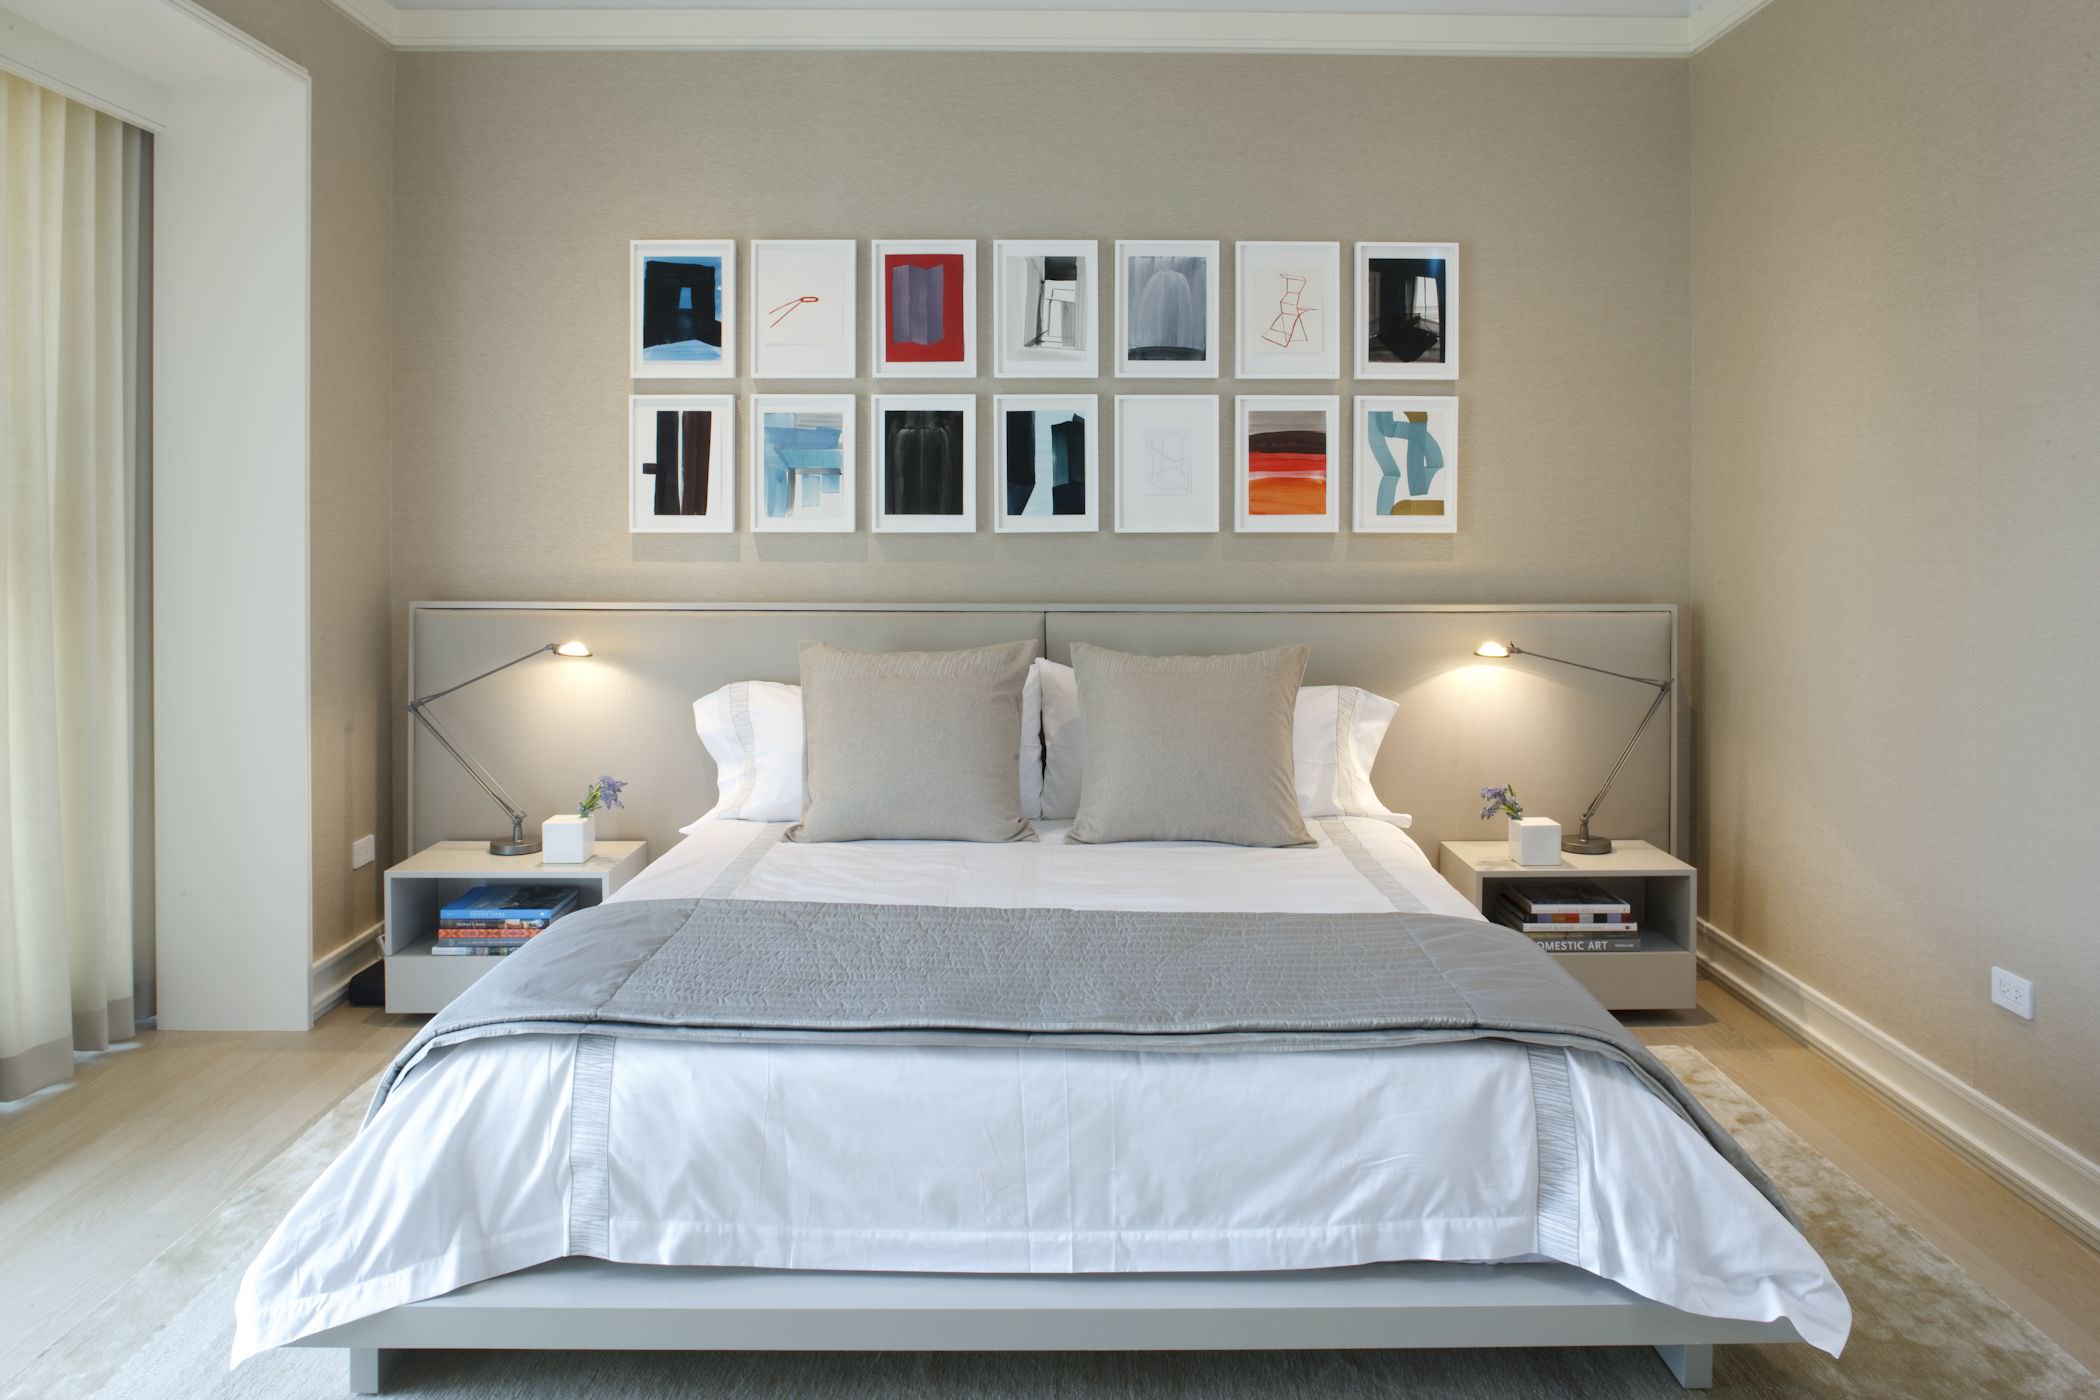 较低的床创造了更多的空间，给人一种更大的主卧室的印象。